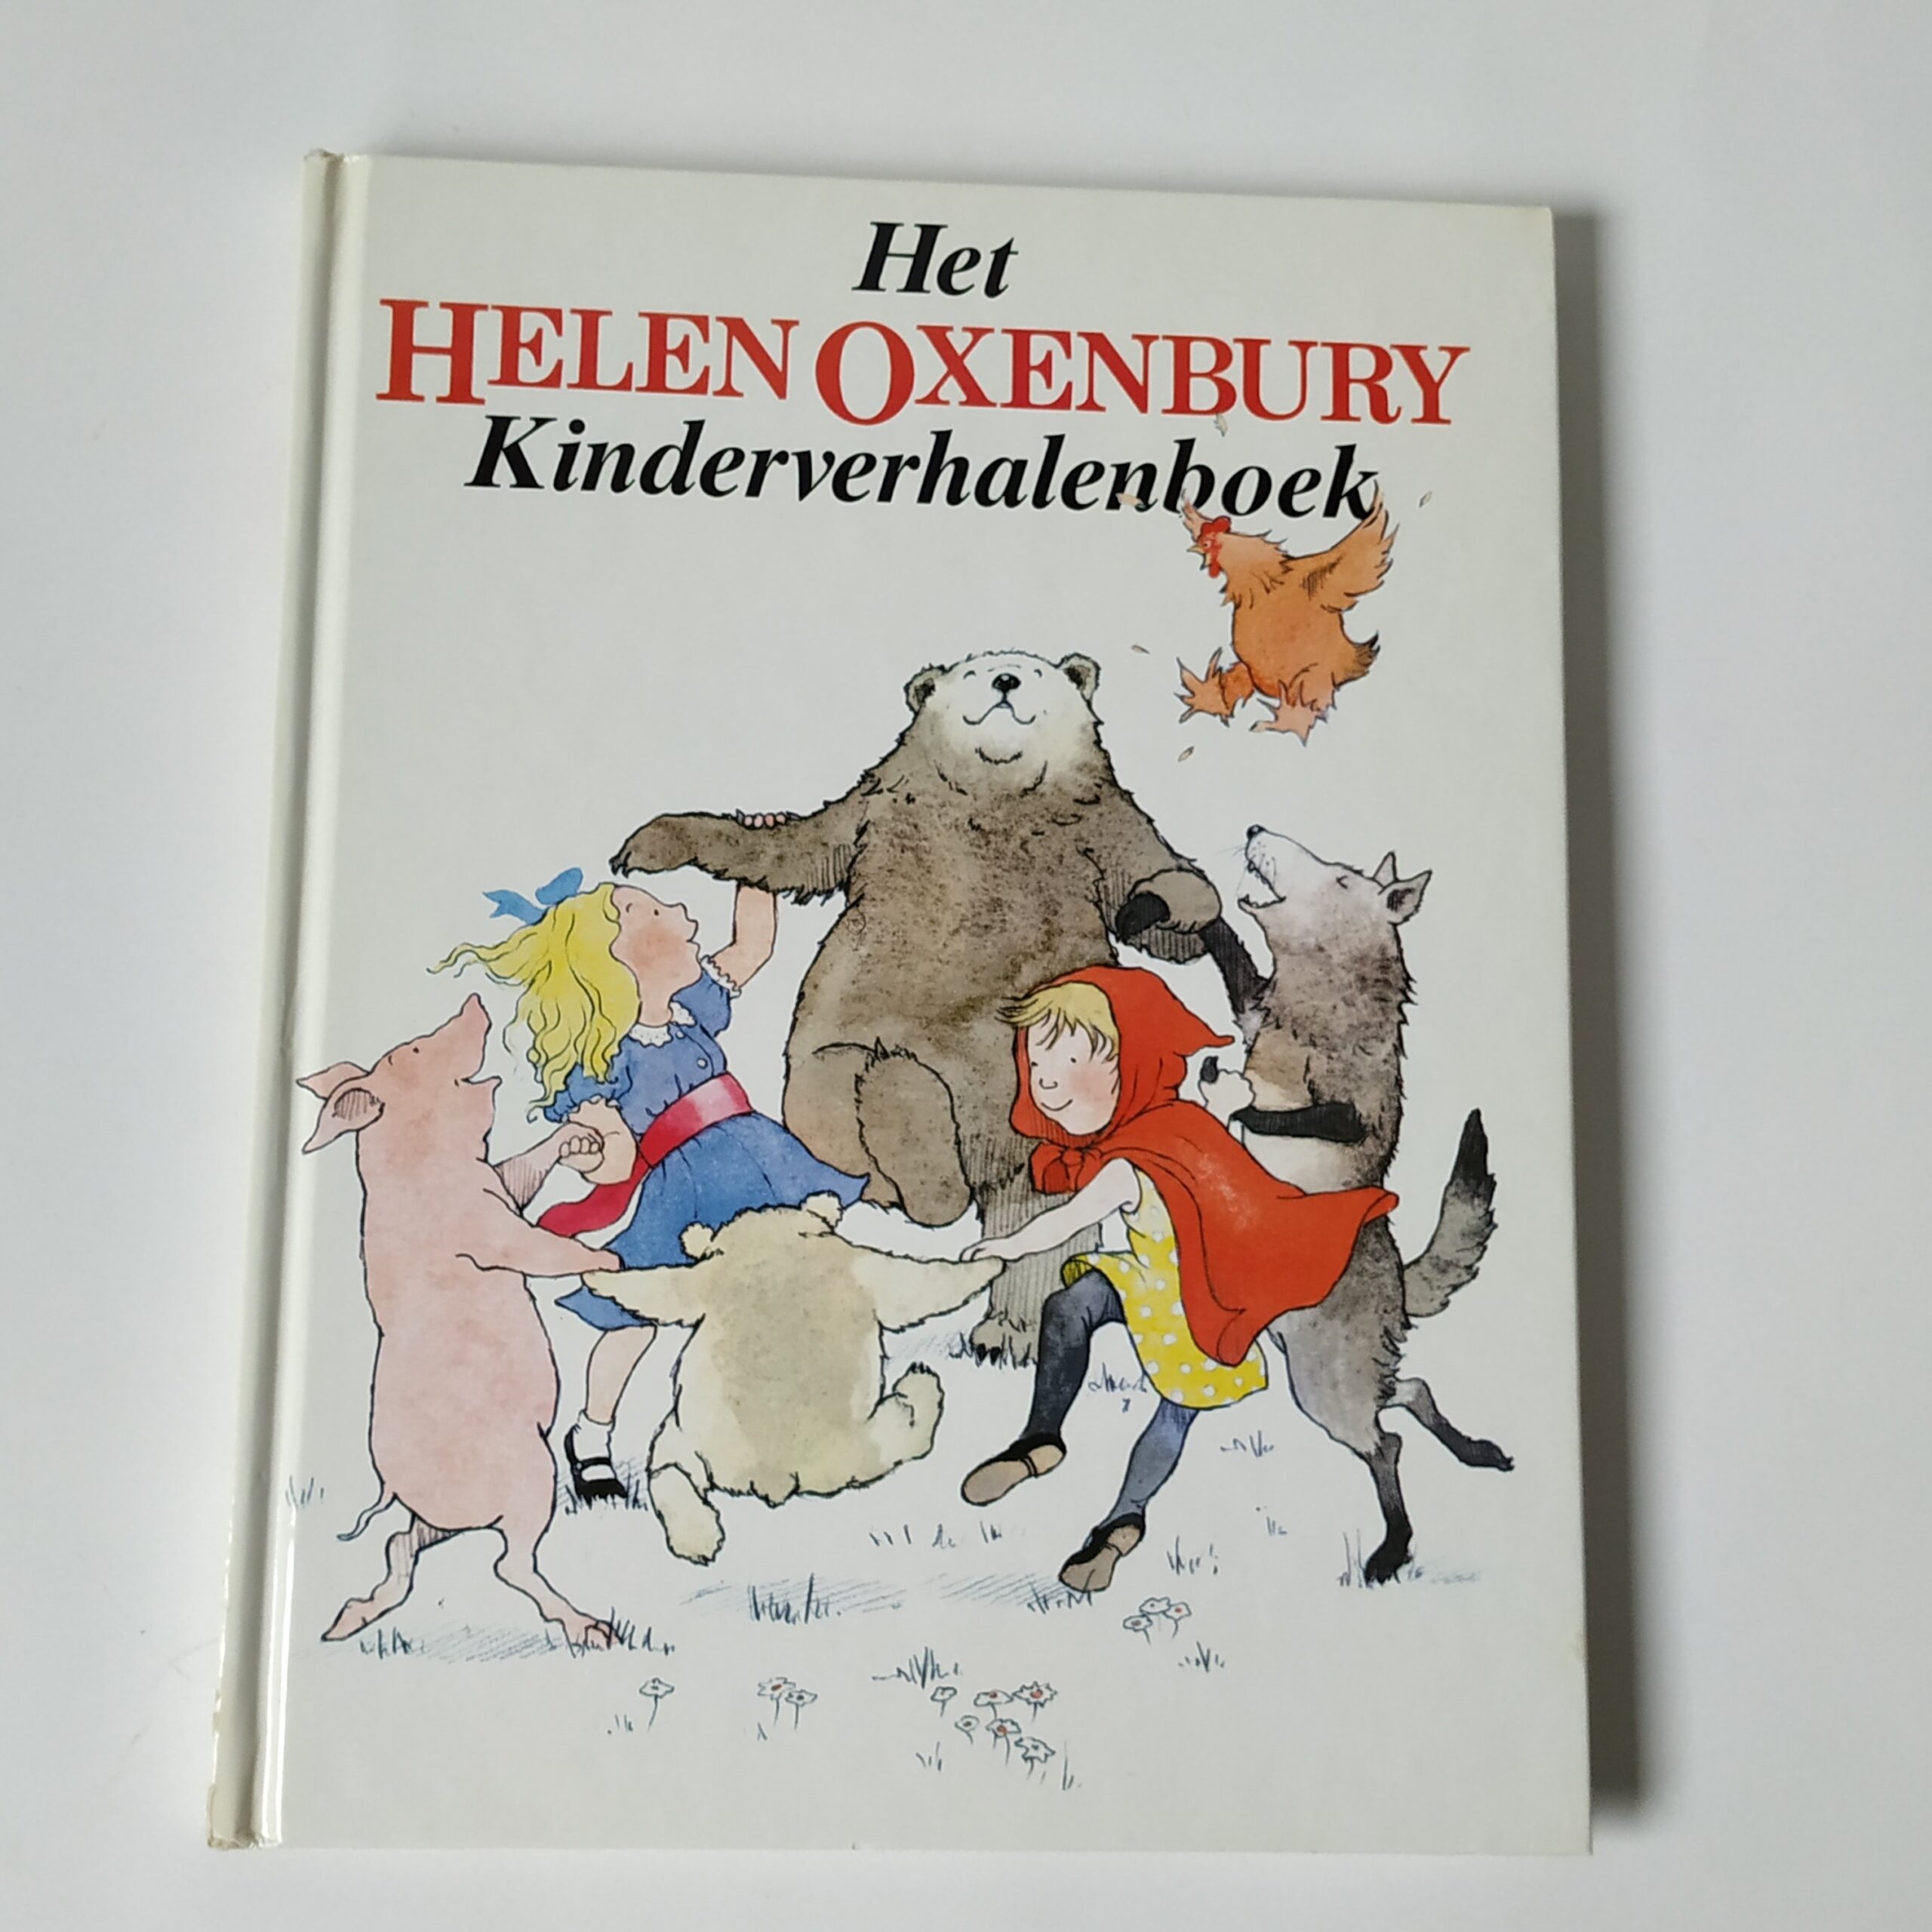 Het Helen Oxenbury Kinderverhalenboek uit 1985 (1)